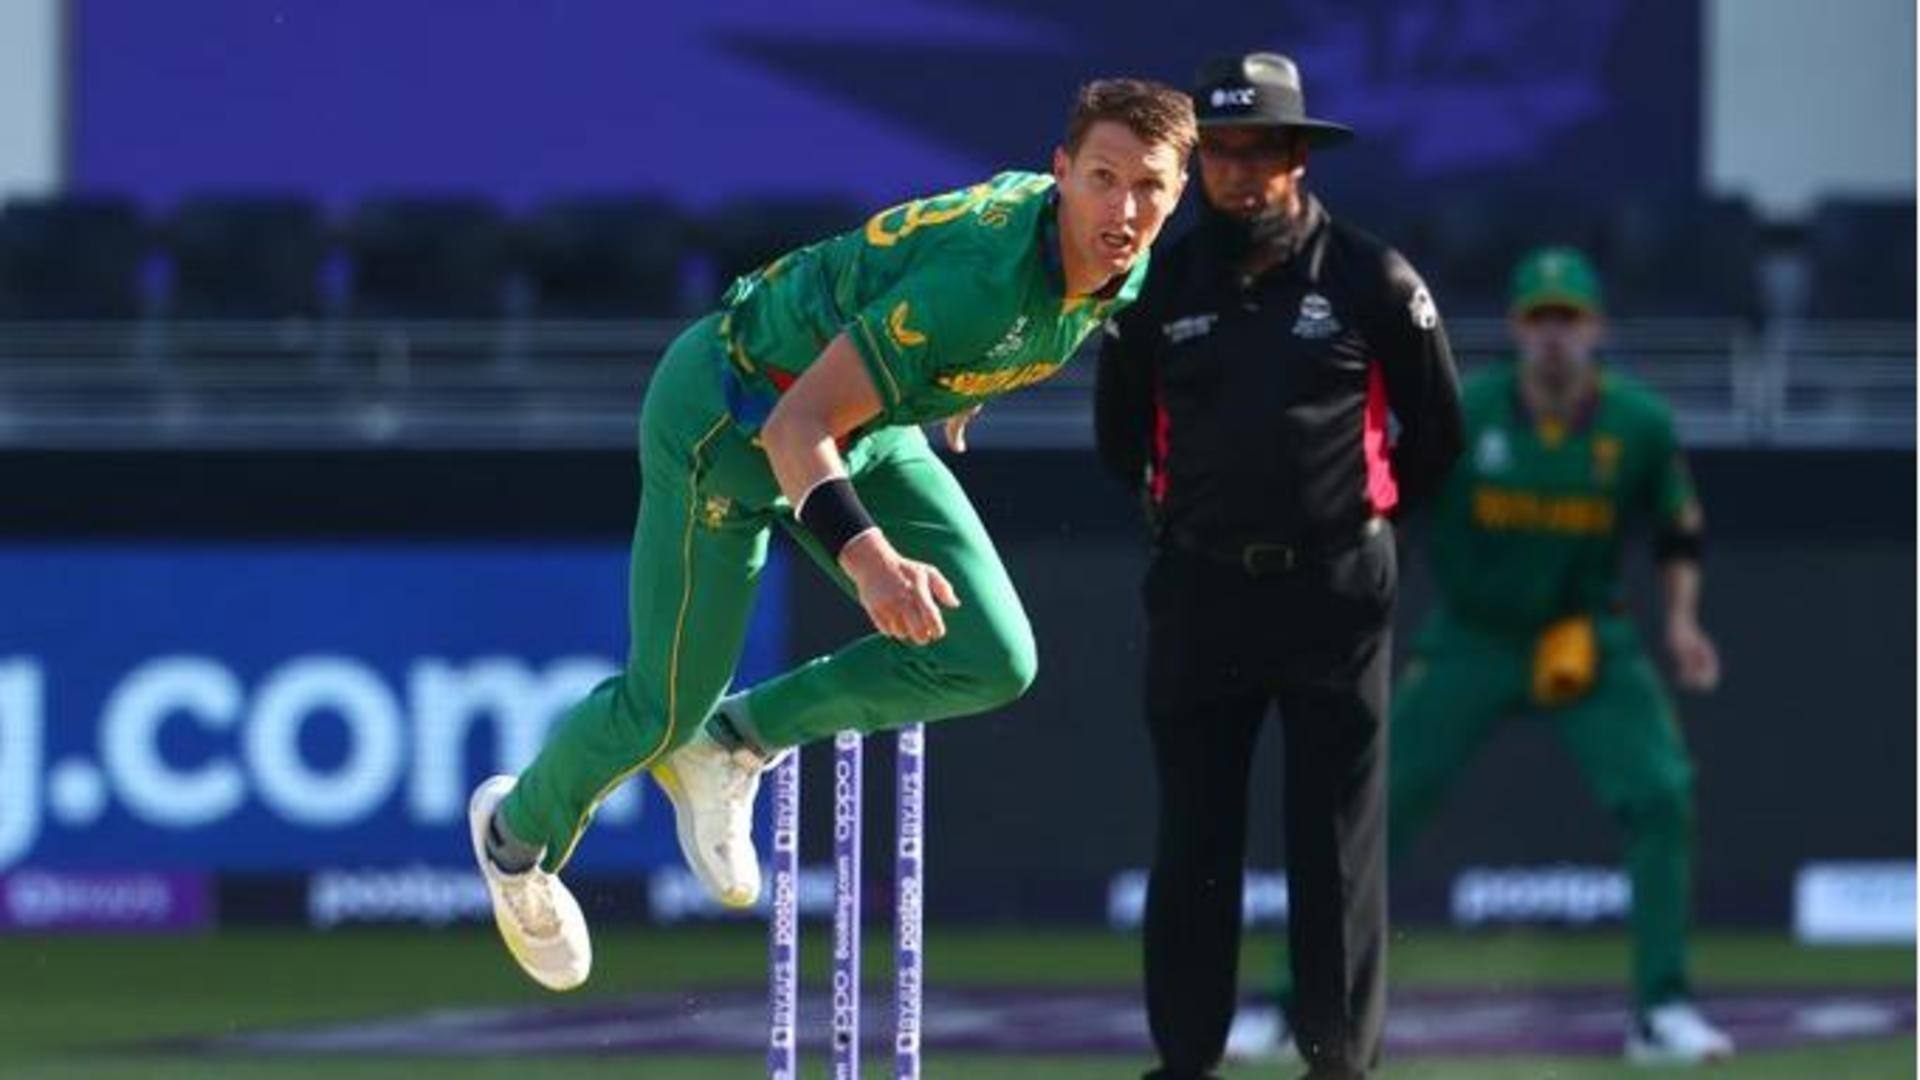 Dwaine Pretorius announces retirement from international cricket: Details here